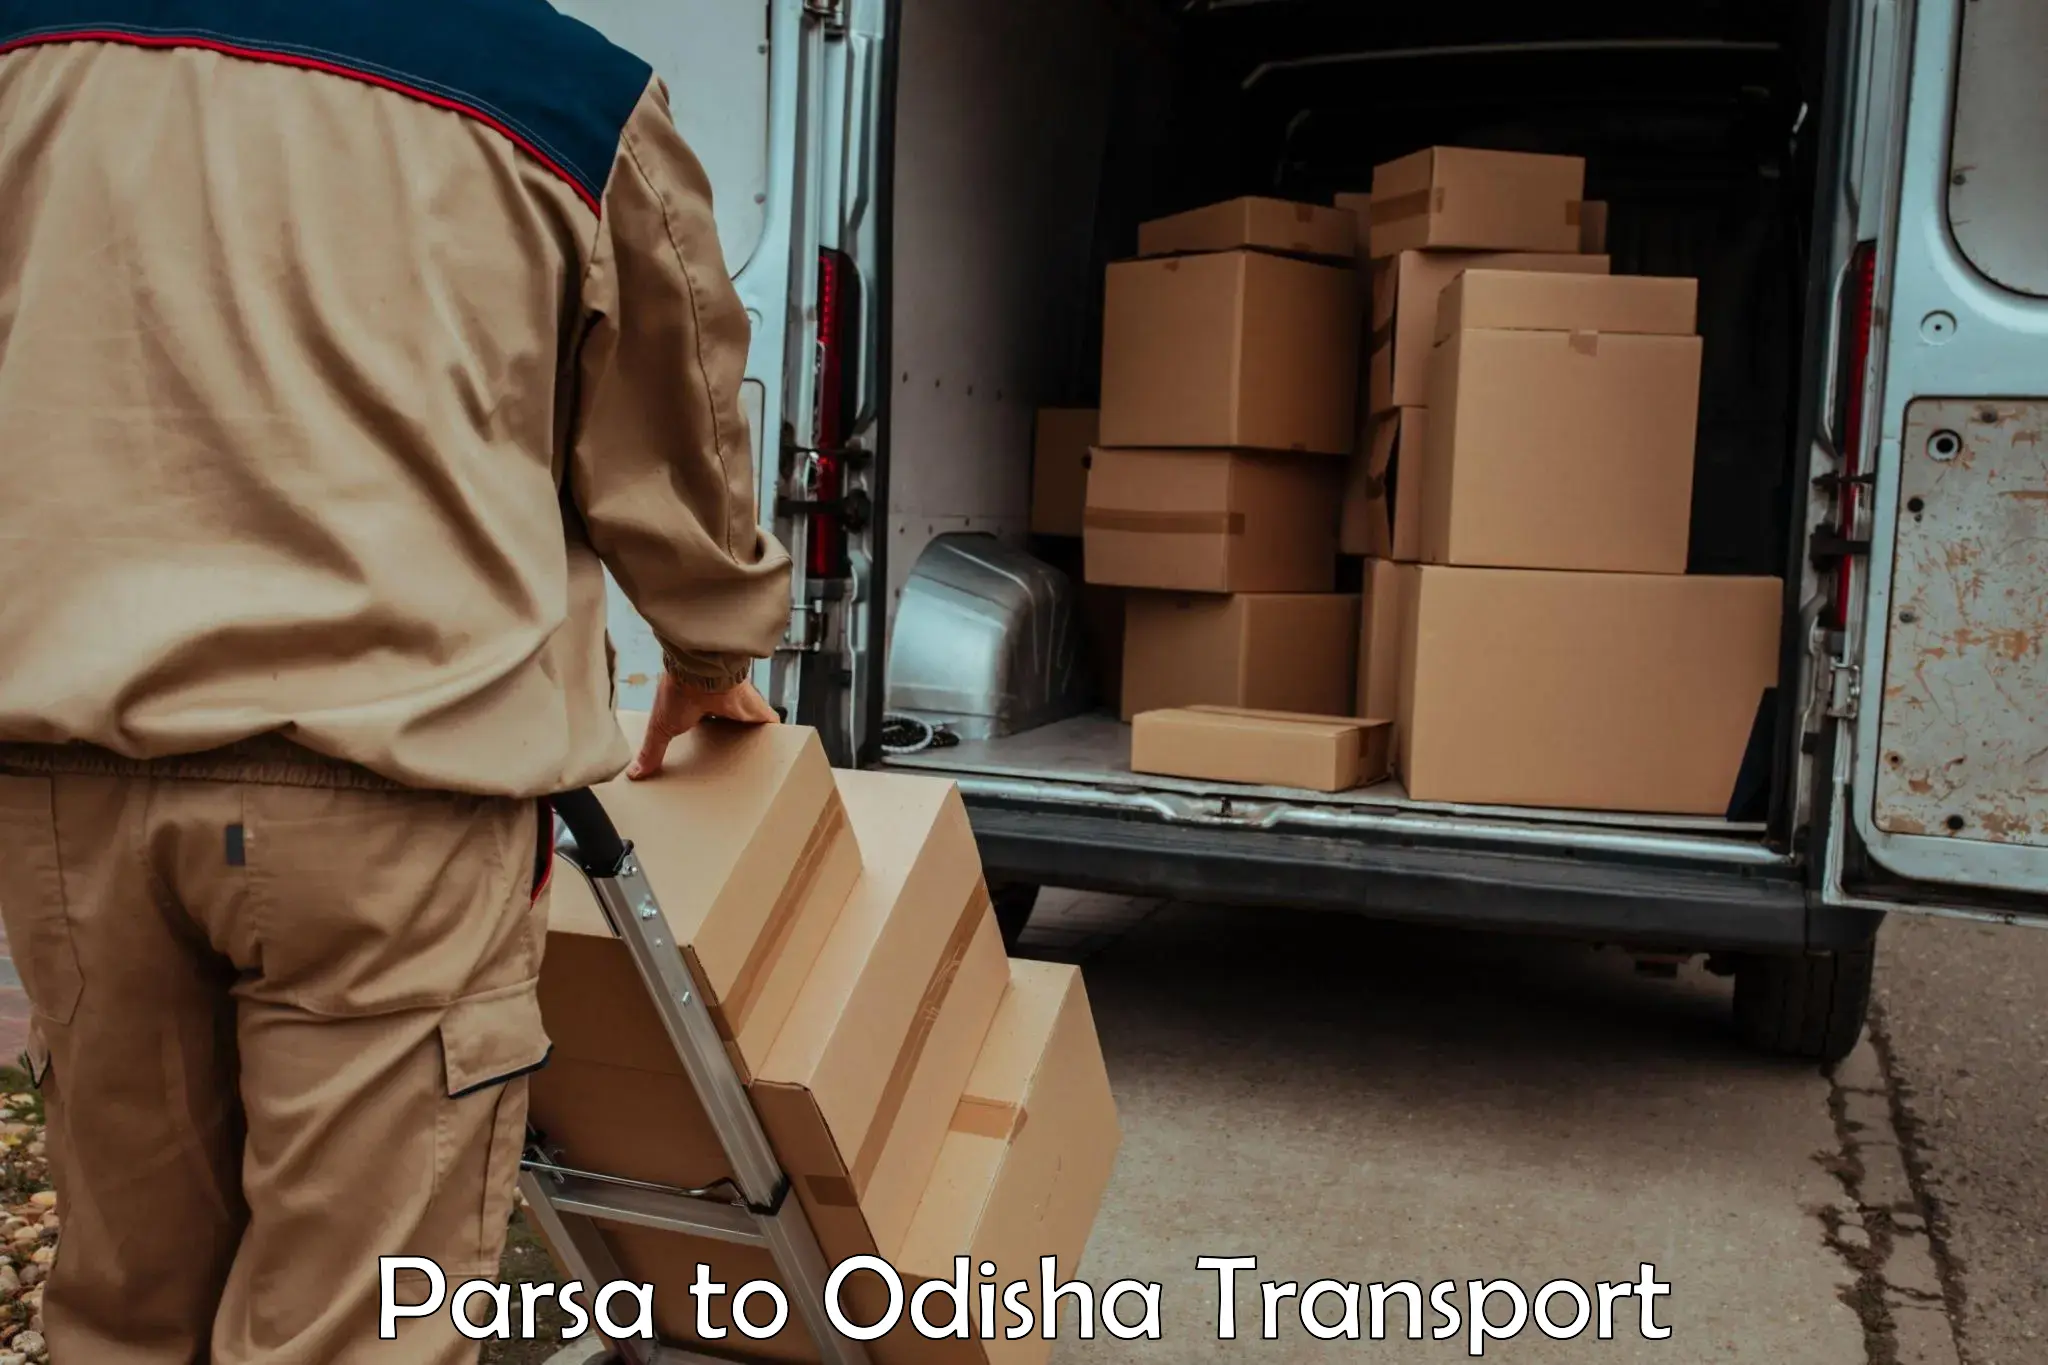 International cargo transportation services Parsa to Jagannathprasad